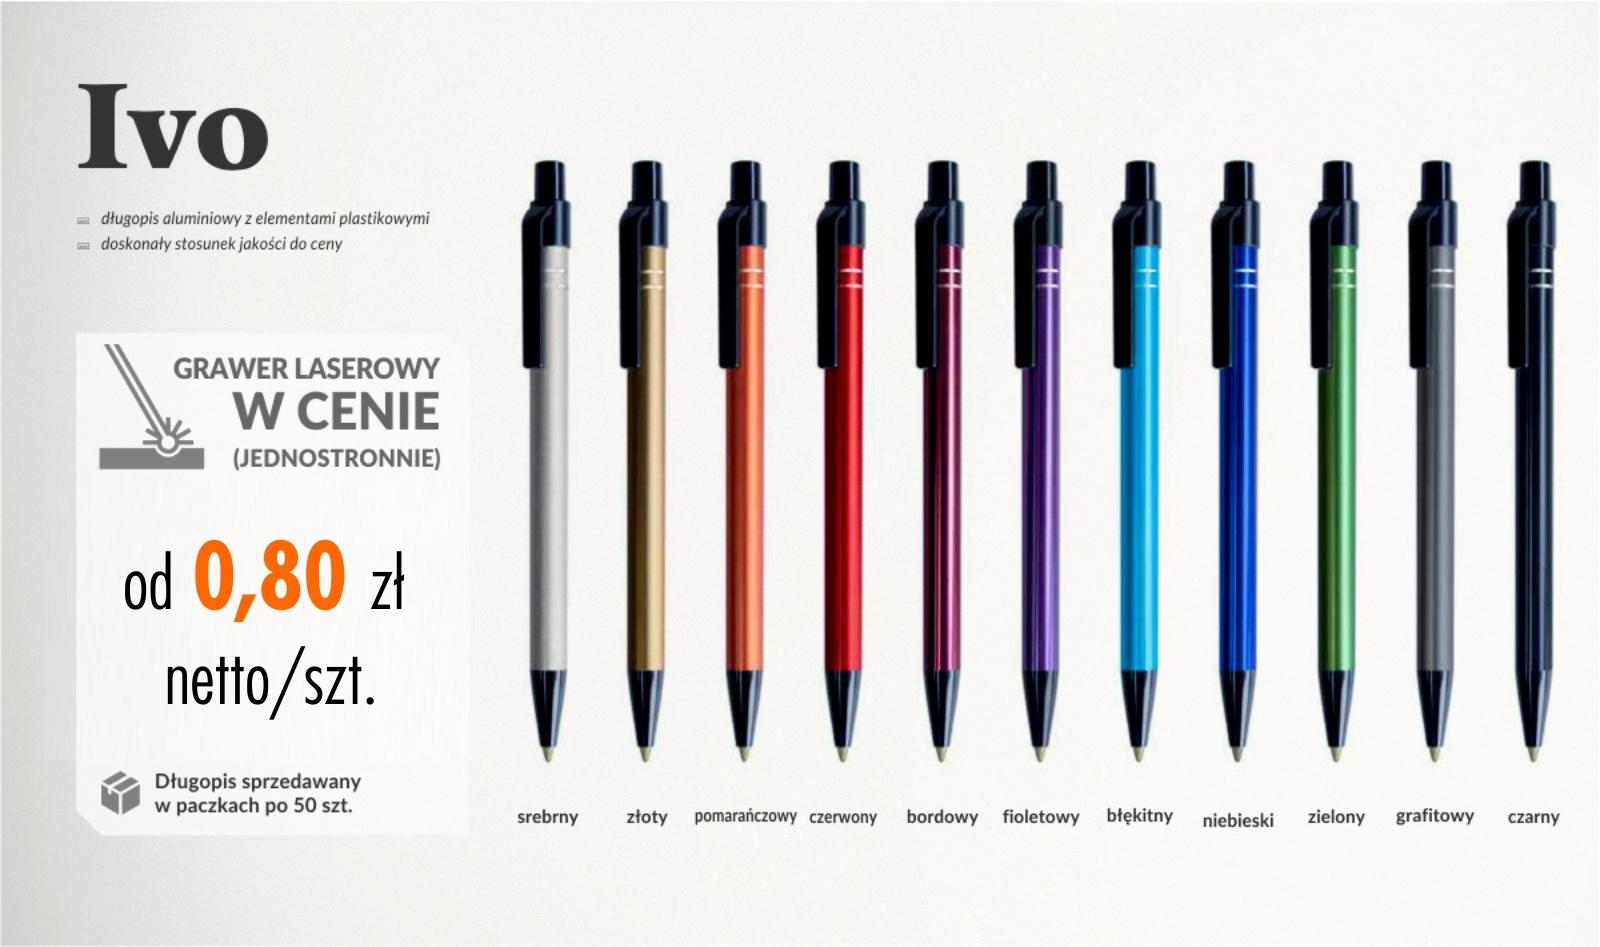 8 ivo - Długopisy z grawerem